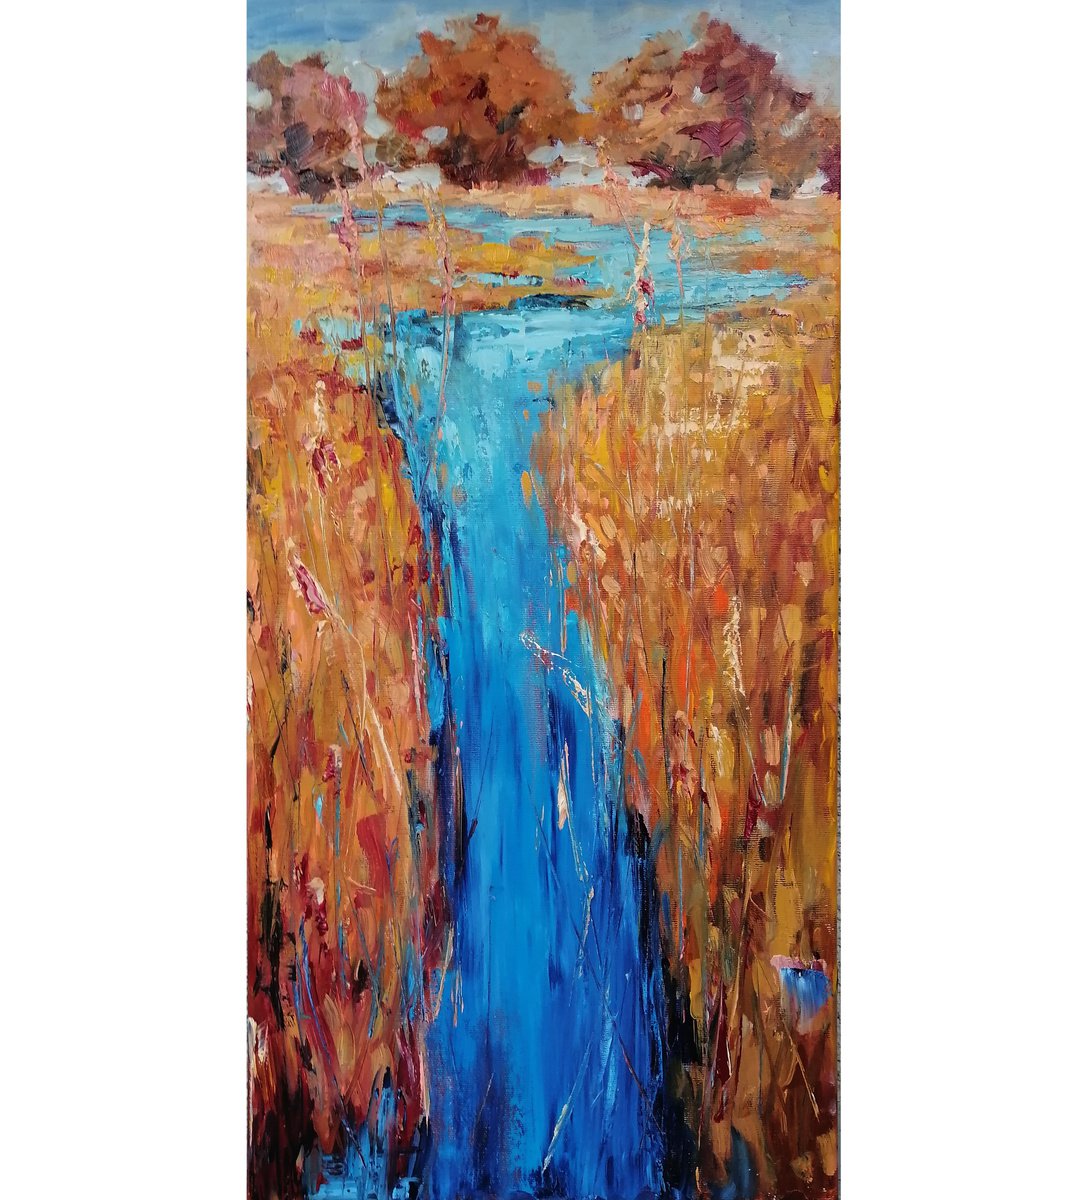 BLUE RIBBON, 30x60cm, summer grass river field by Emilia Milcheva